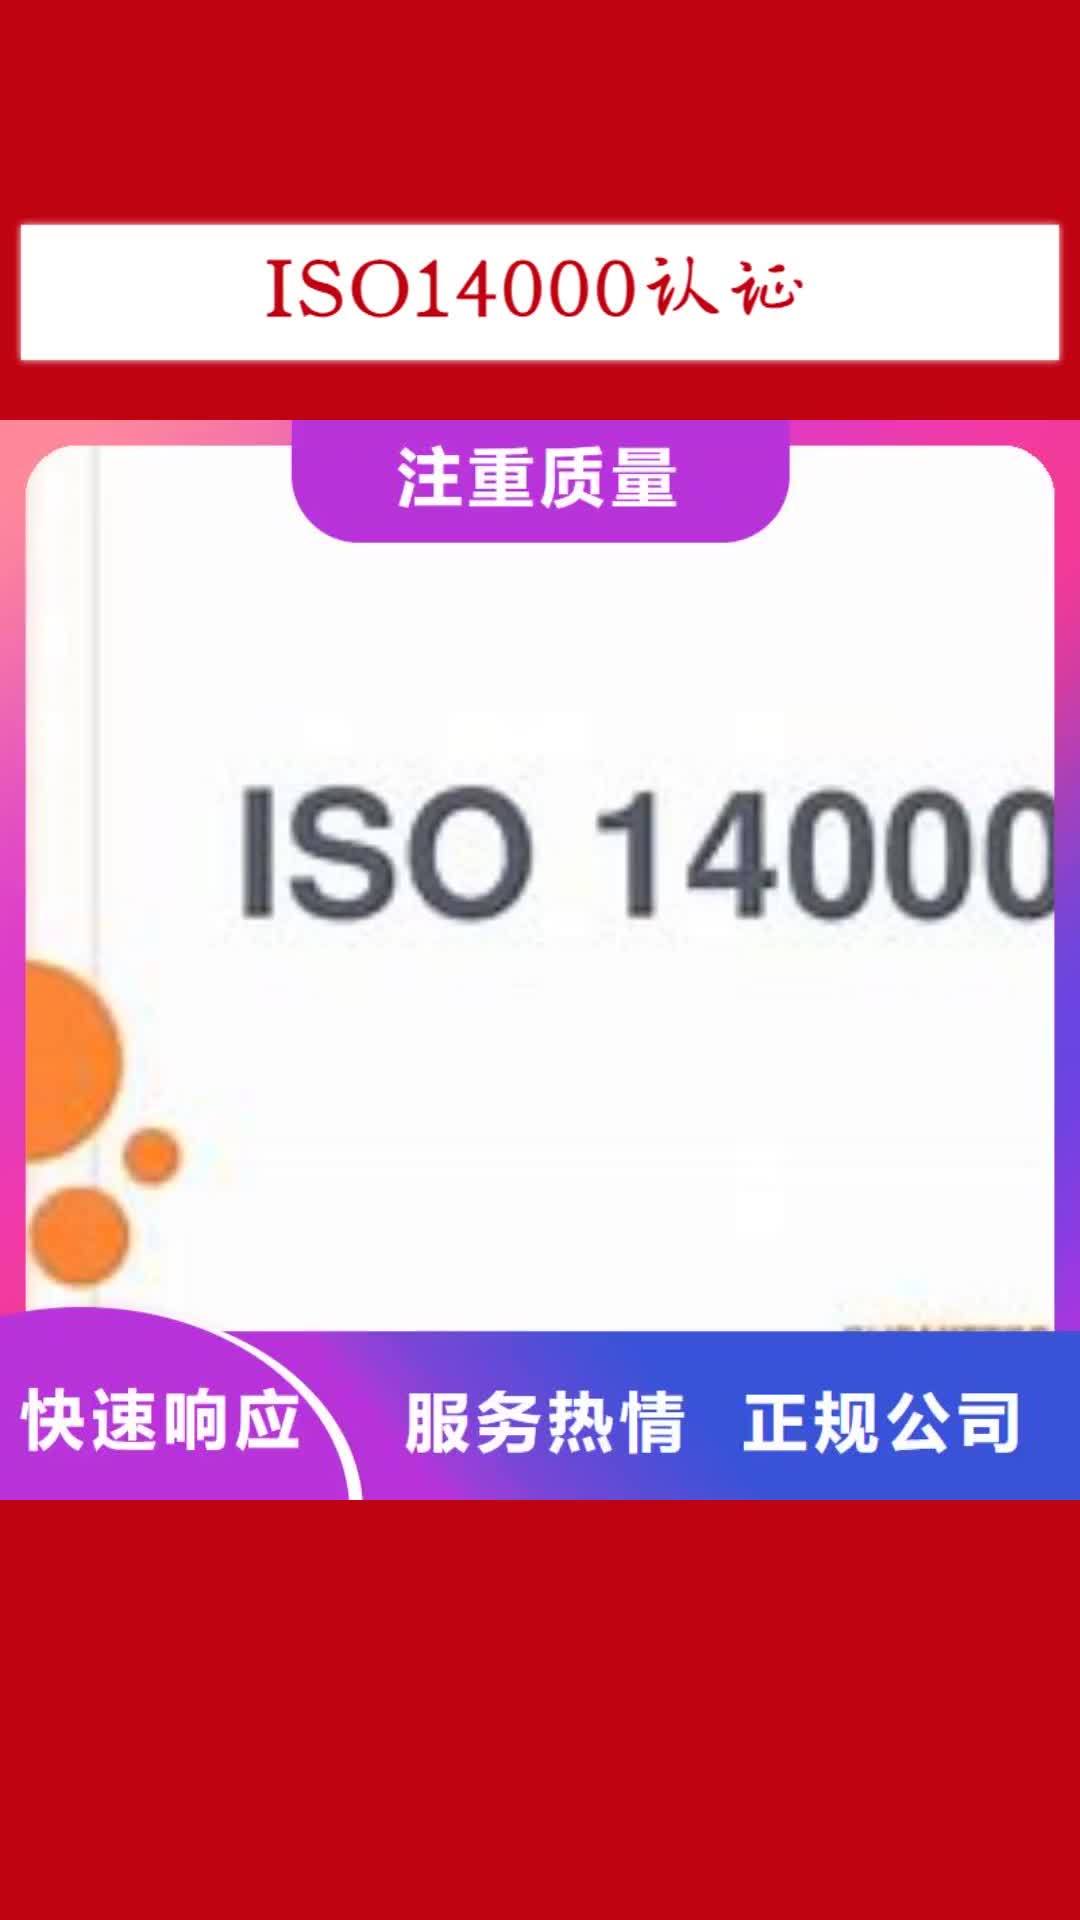 德宏【ISO14000认证】 HACCP认证明码标价